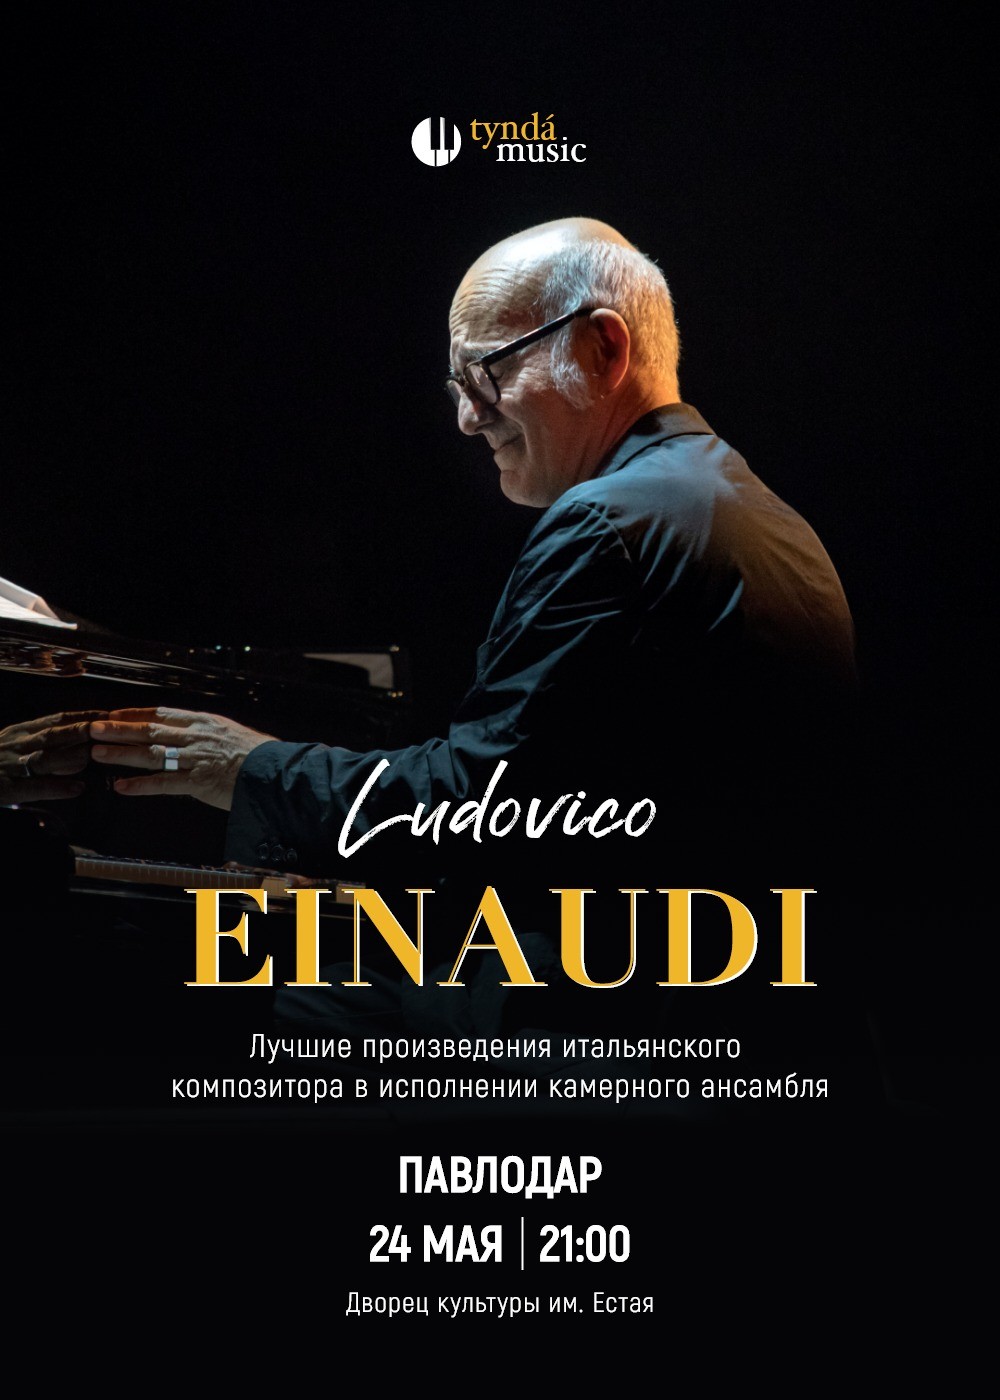 Ludovico Einaudi 2.1 in Pavlodar